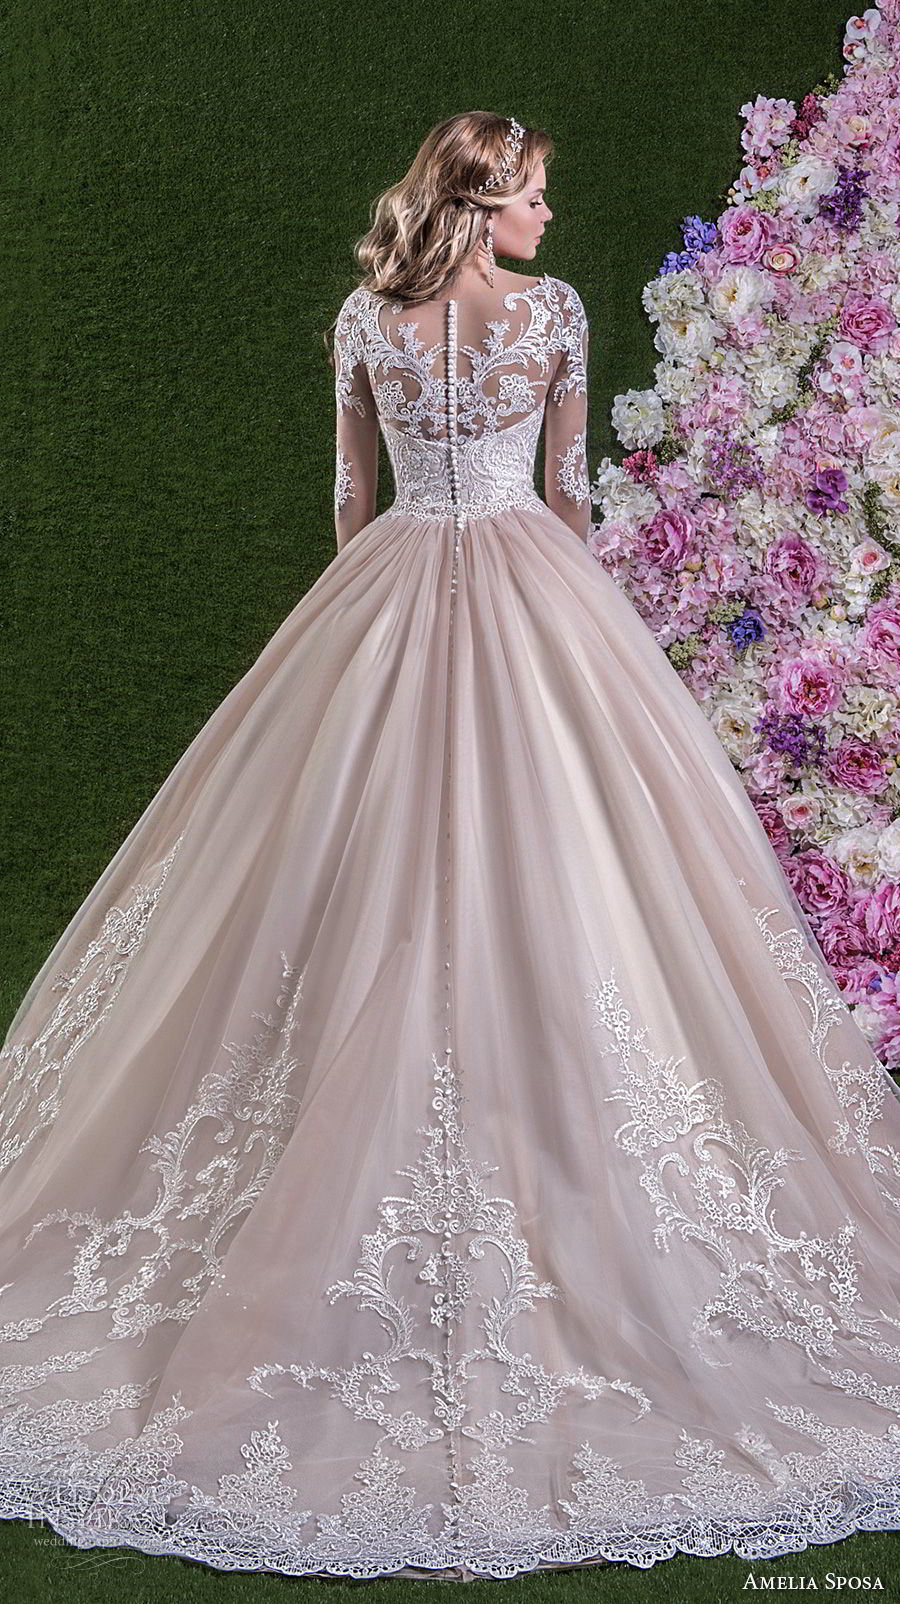 Amelie Rocky 2018 with Train Bridal Wedding Dress